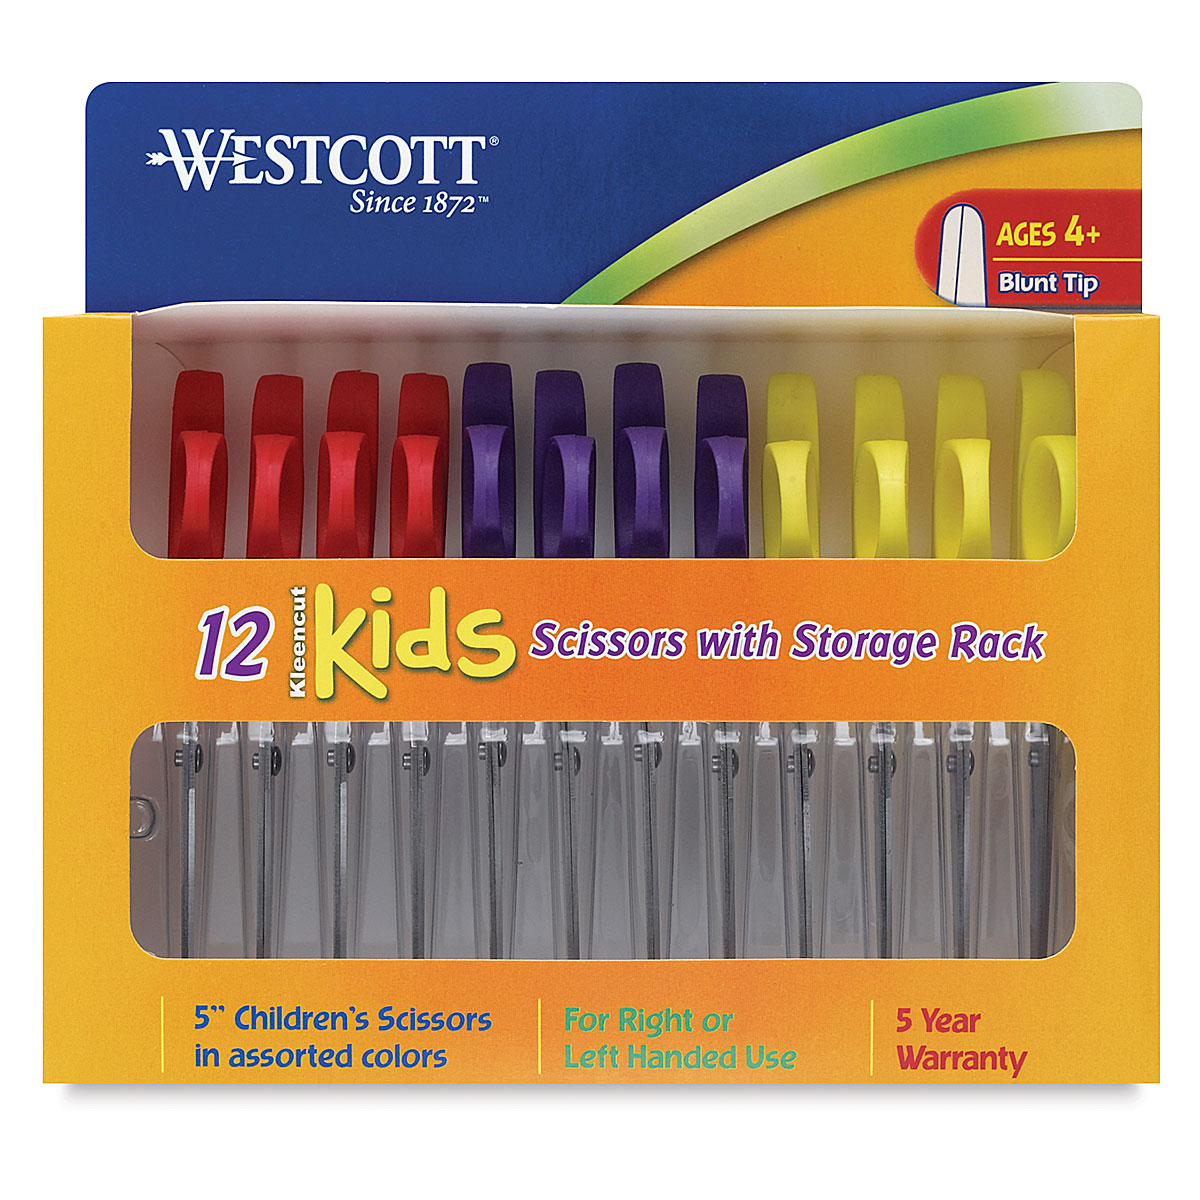 Westcott Kleencut Kids' Scissors